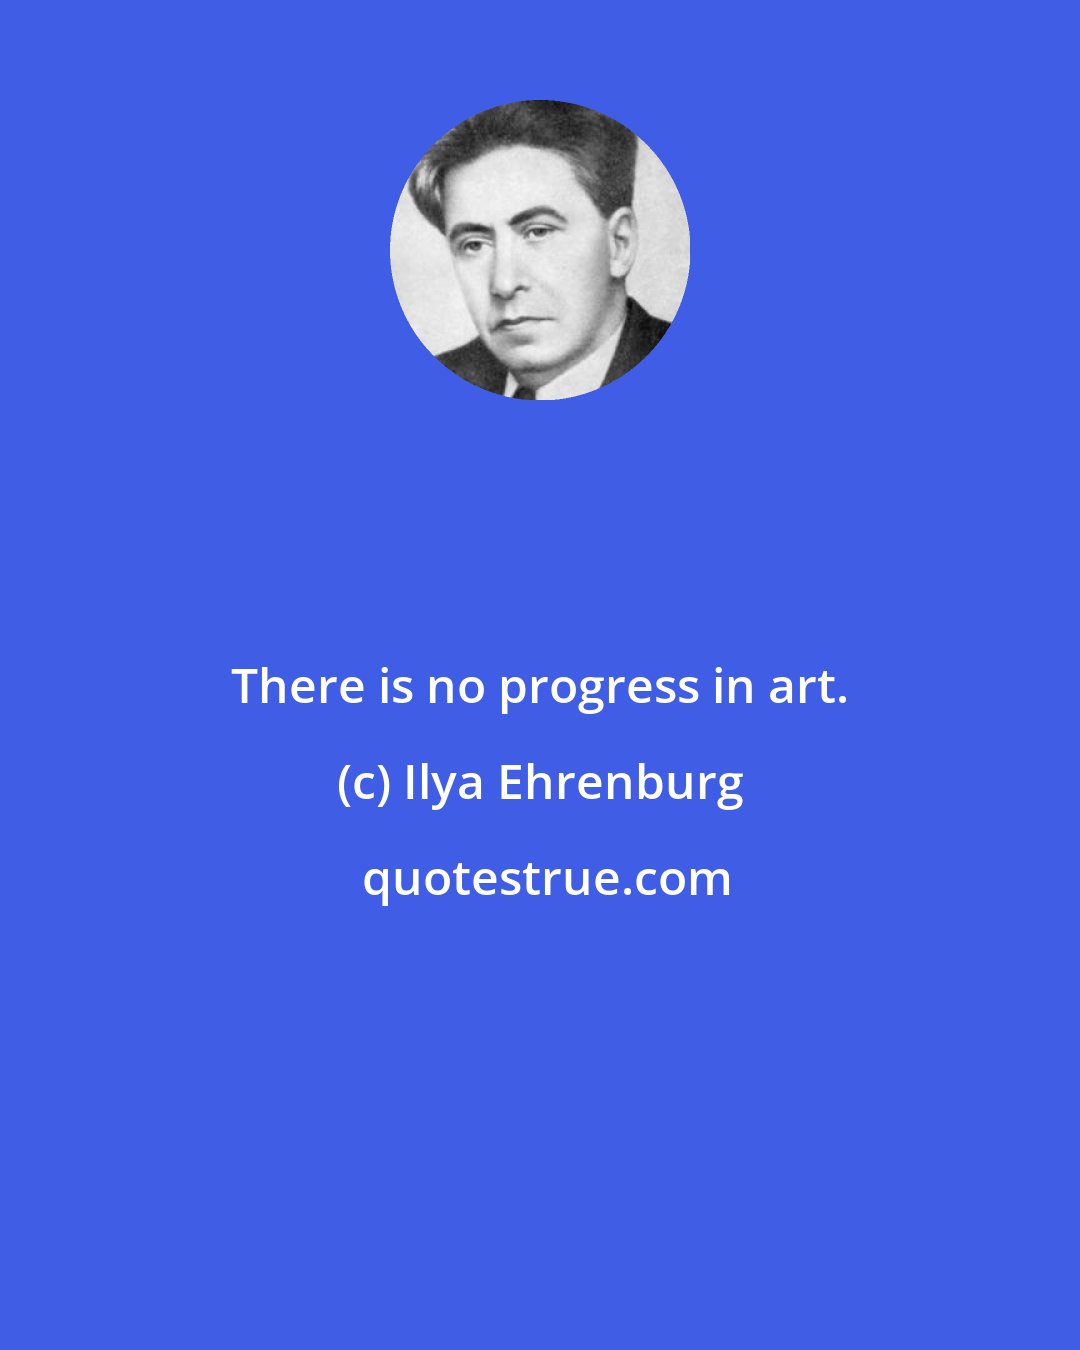 Ilya Ehrenburg: There is no progress in art.